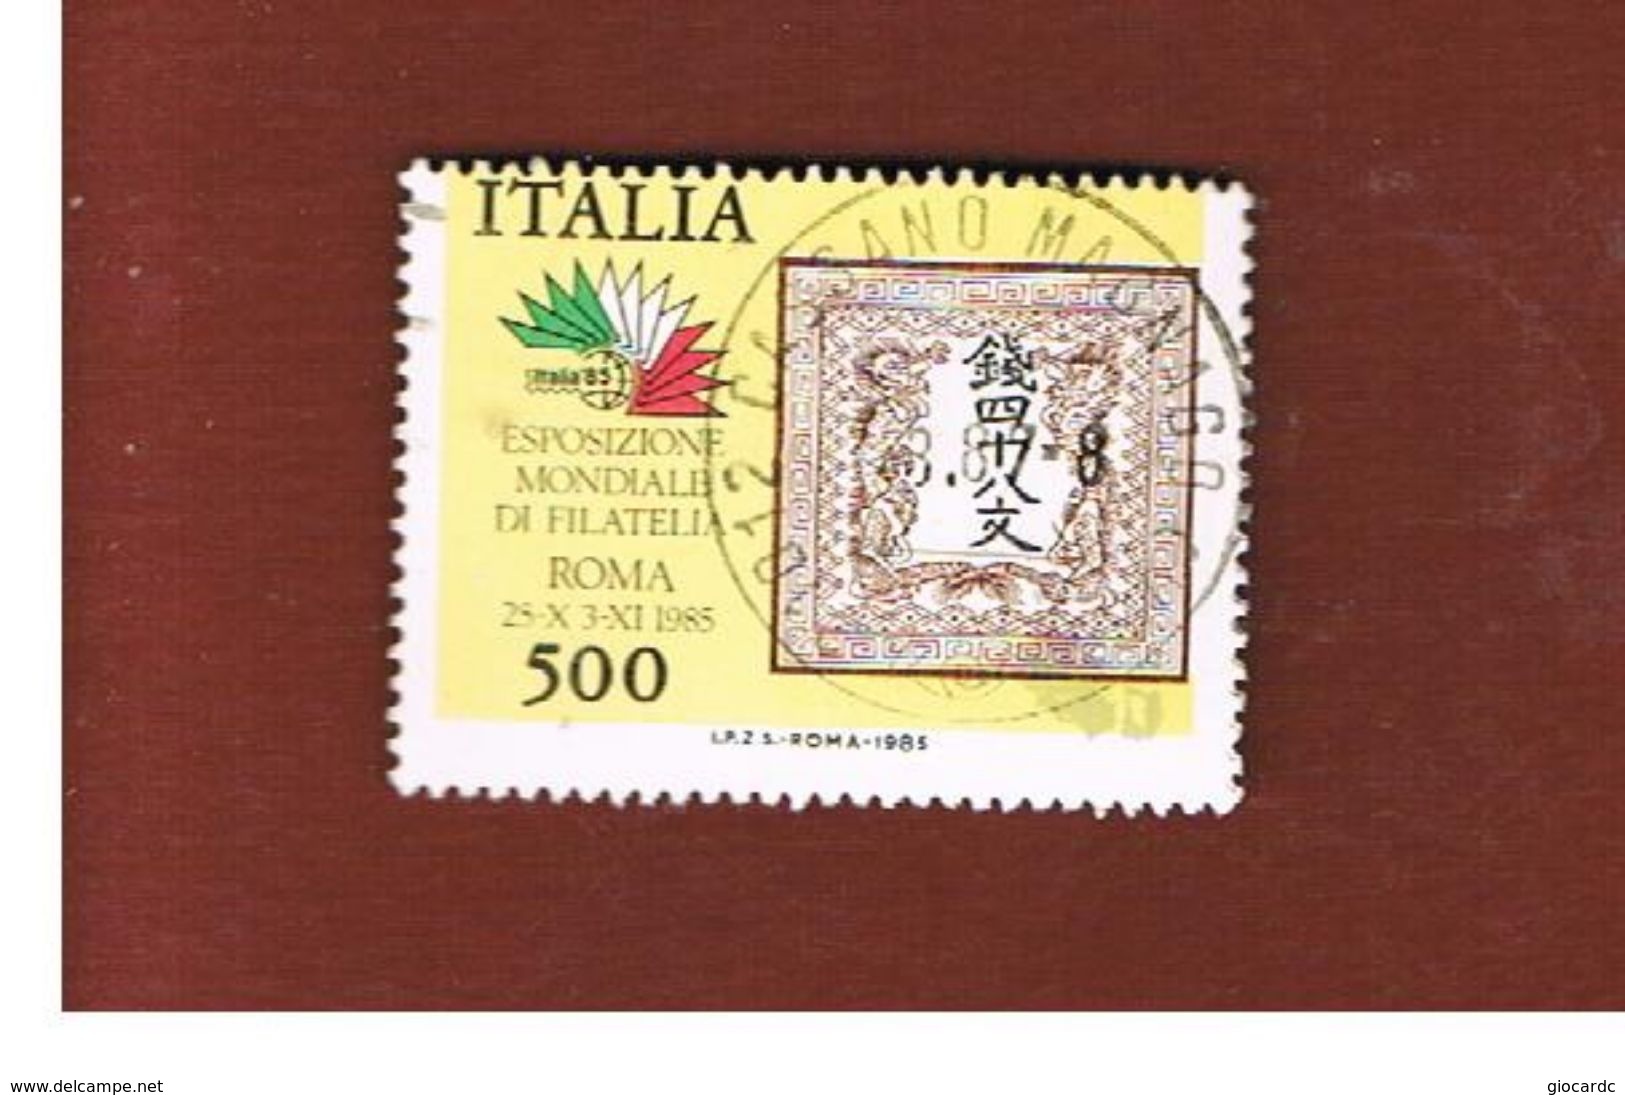 ITALIA REPUBBLICA  - SASS. 1747   -      1985  ITALIA 85, I 5 CONTINENTI: ASIA       -      USATO - 1981-90: Used